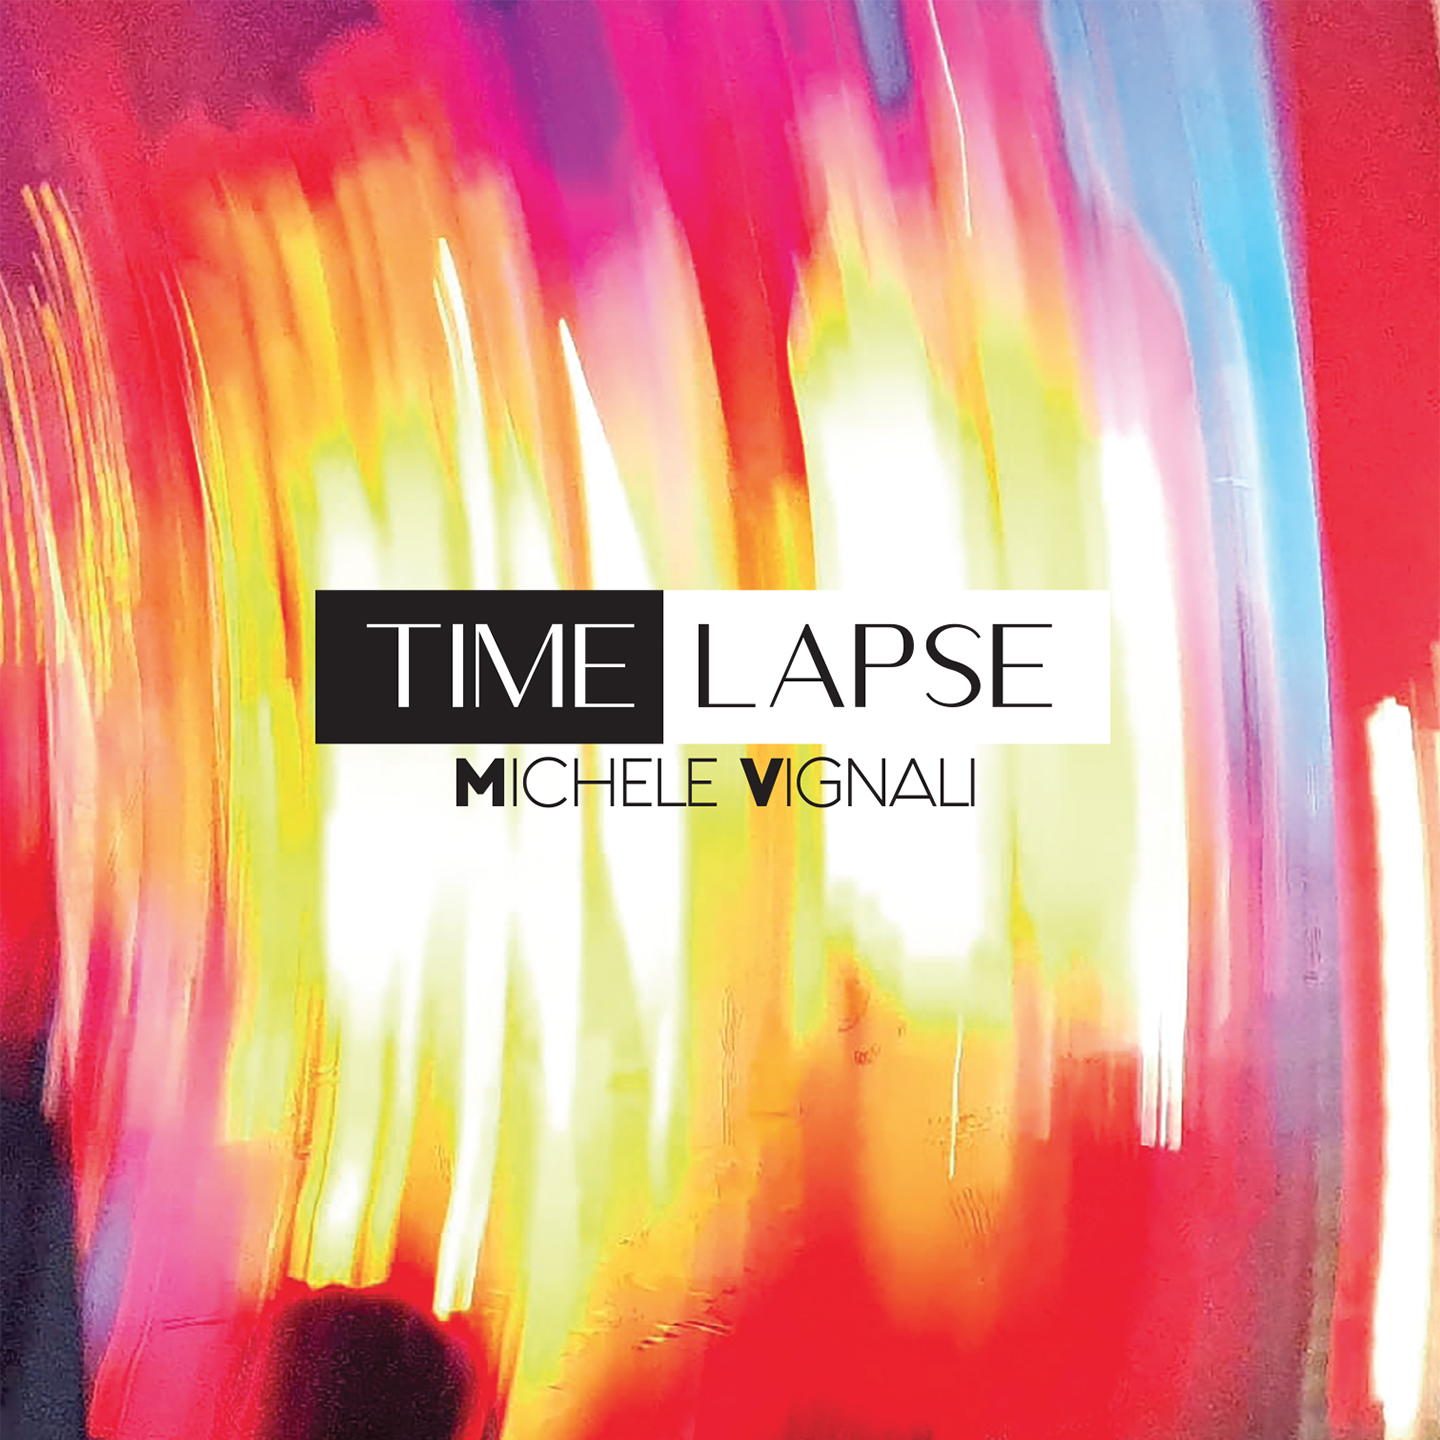 Al momento stai visualizzando TIME LAPSE by Michele Vignali